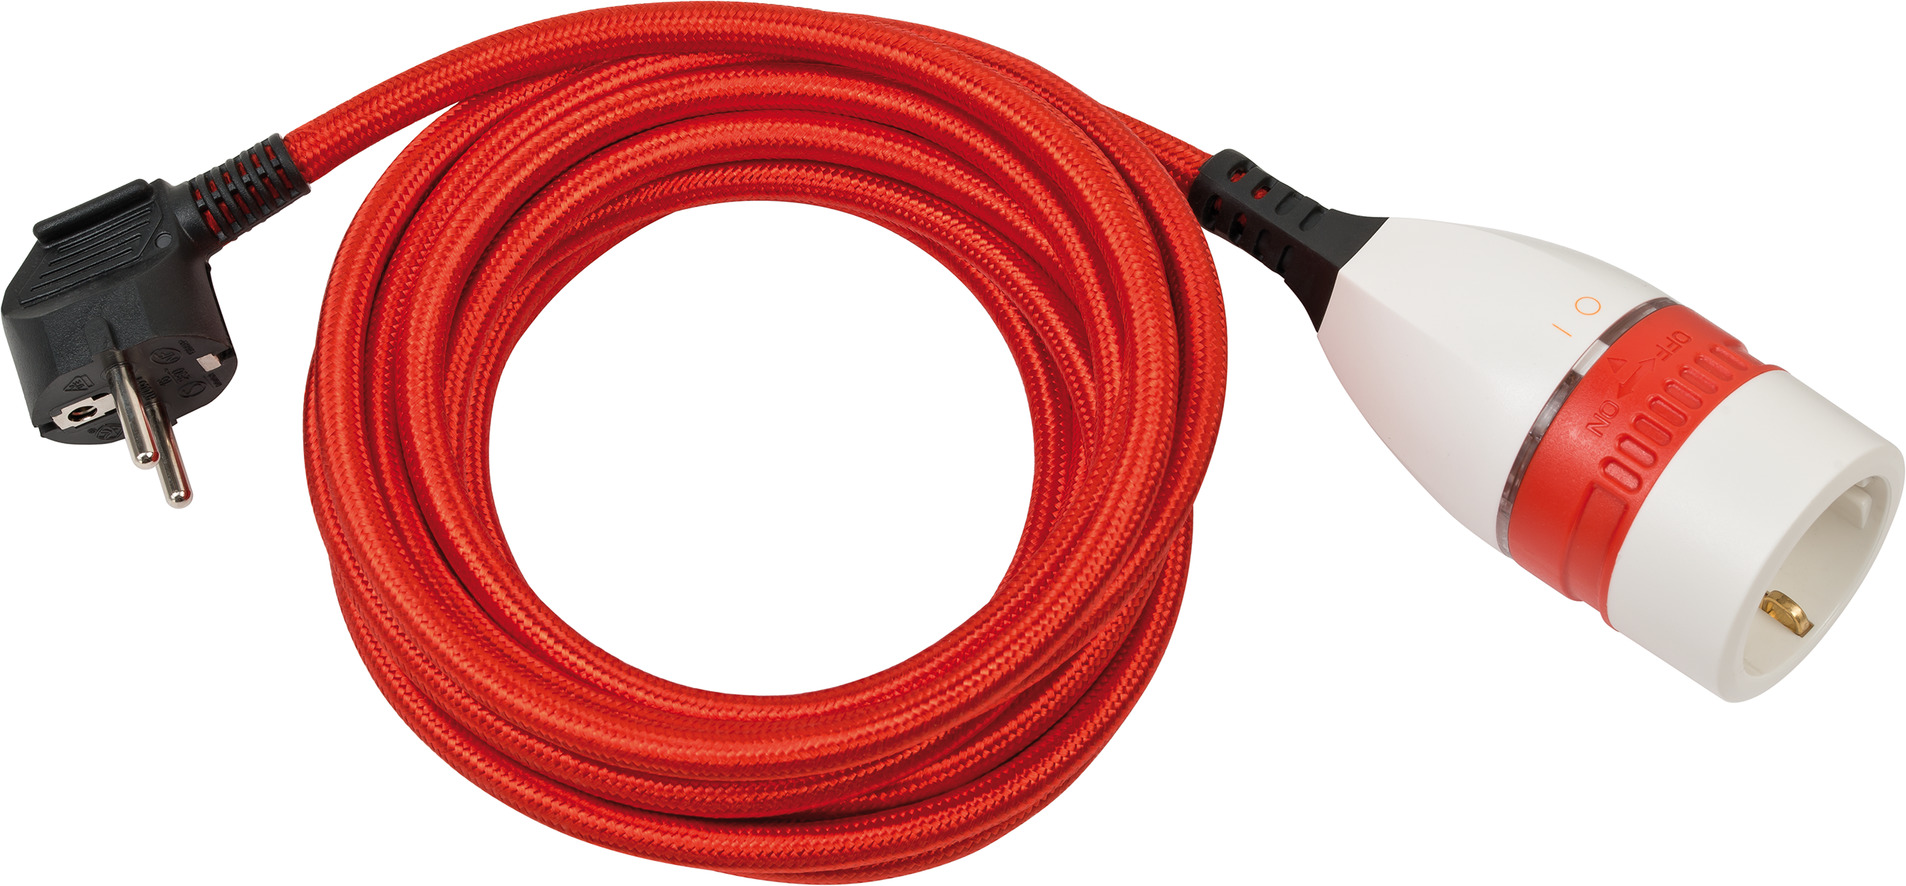 Cable alargador de plástico de alta calidad con interruptor giratorio y  cubierta textil 5m H05VV-F 3G1,5 rojo/blanco/negro